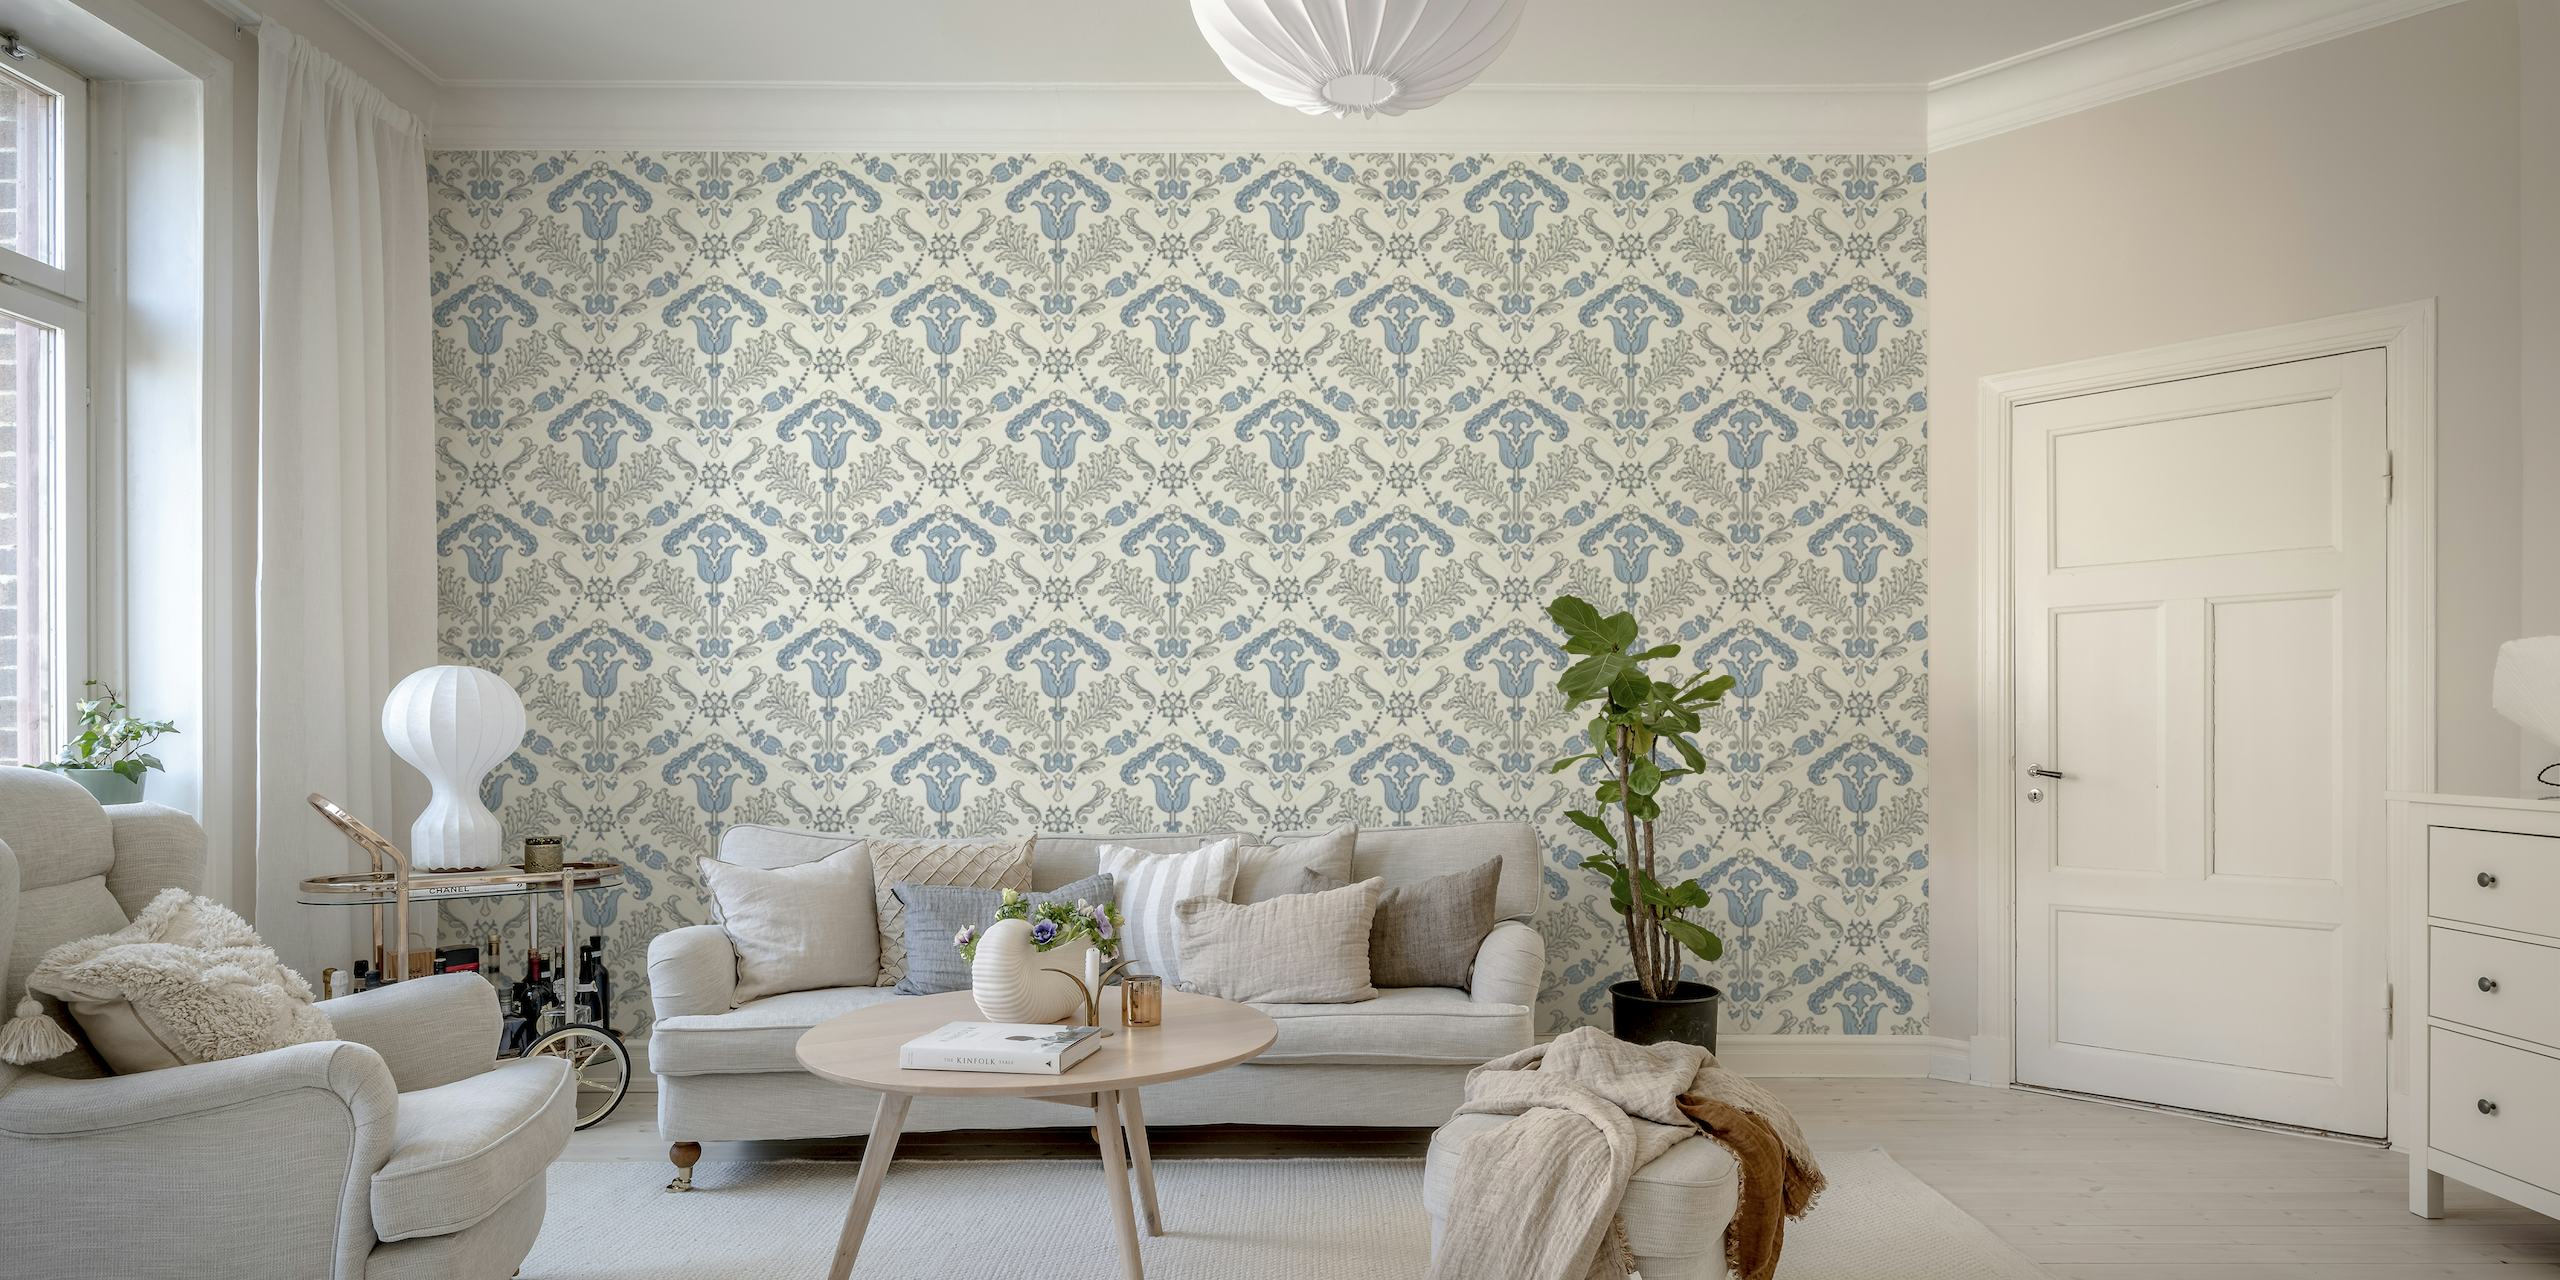 Fotomural con estampado de tulipanes estilizados en azul claro para decoración del hogar.